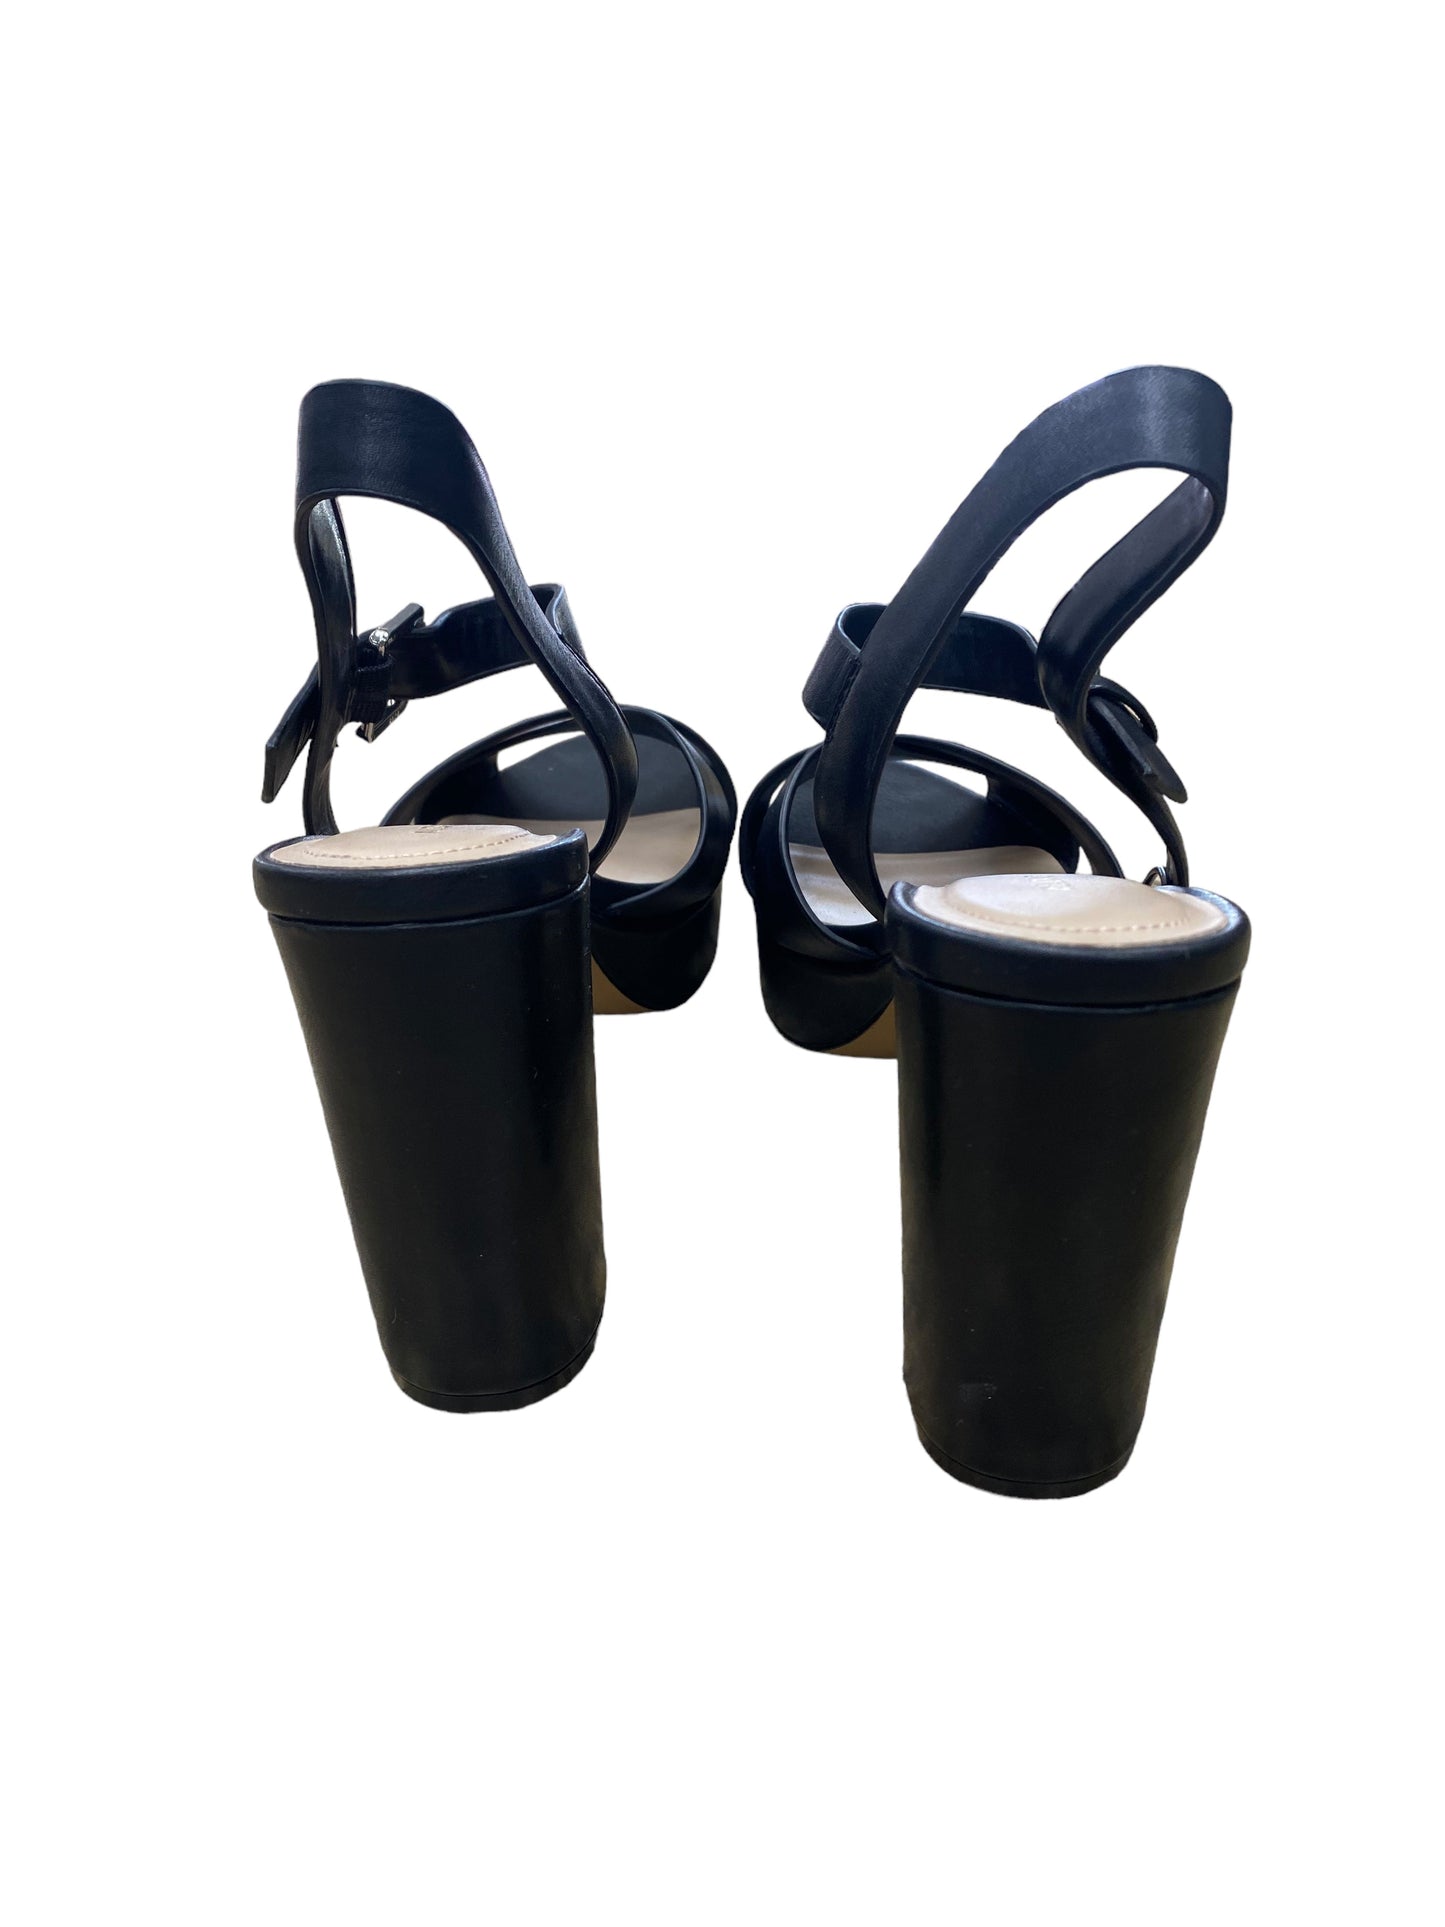 Black Sandals Heels Block Aldo, Size 6.5